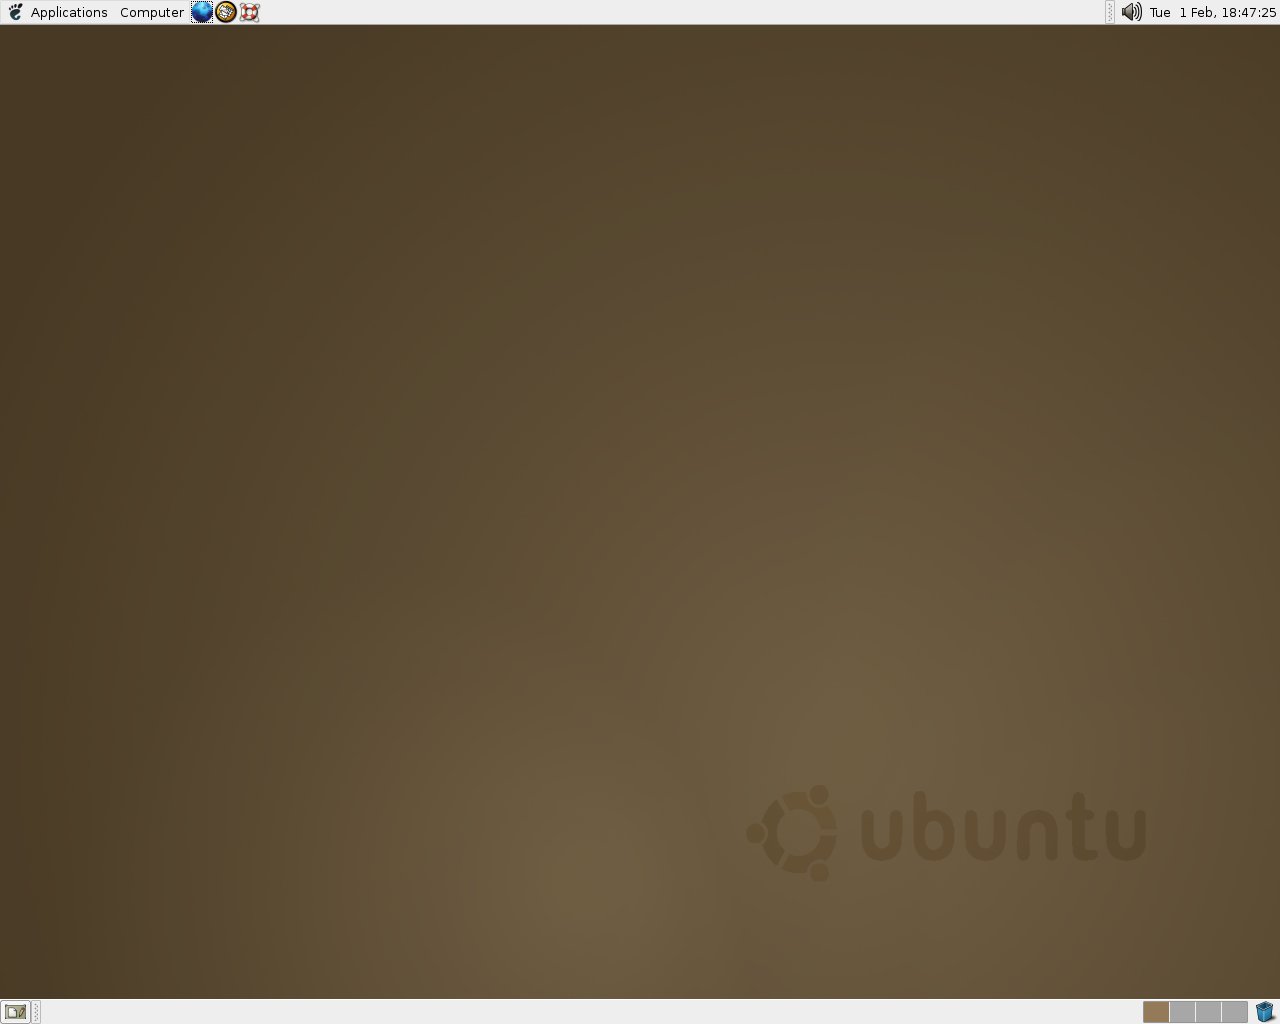 Ubuntu 4.10 "Warty Warthog"